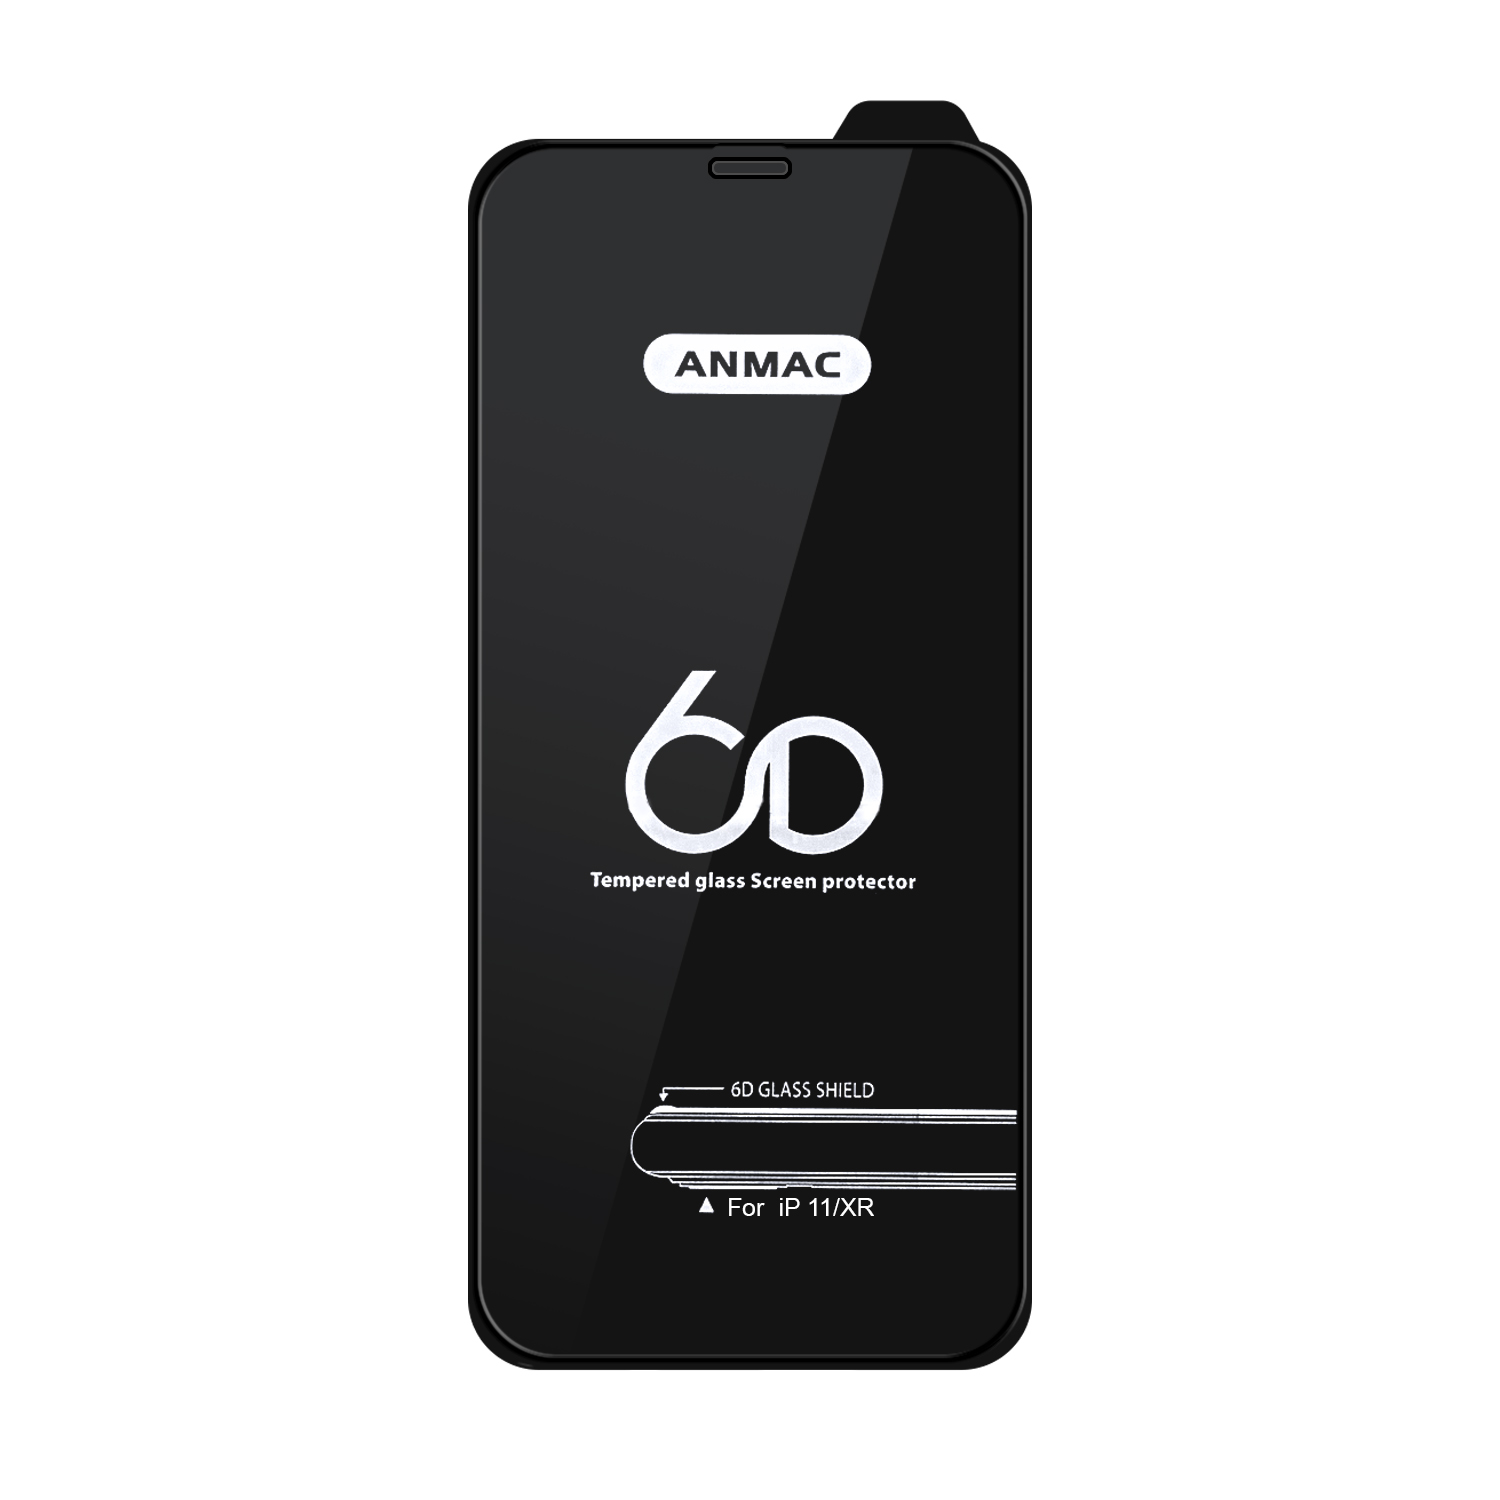 Защитное стекло iPh 11/XR Anmac 6D Black без упаковки Арт.1137156